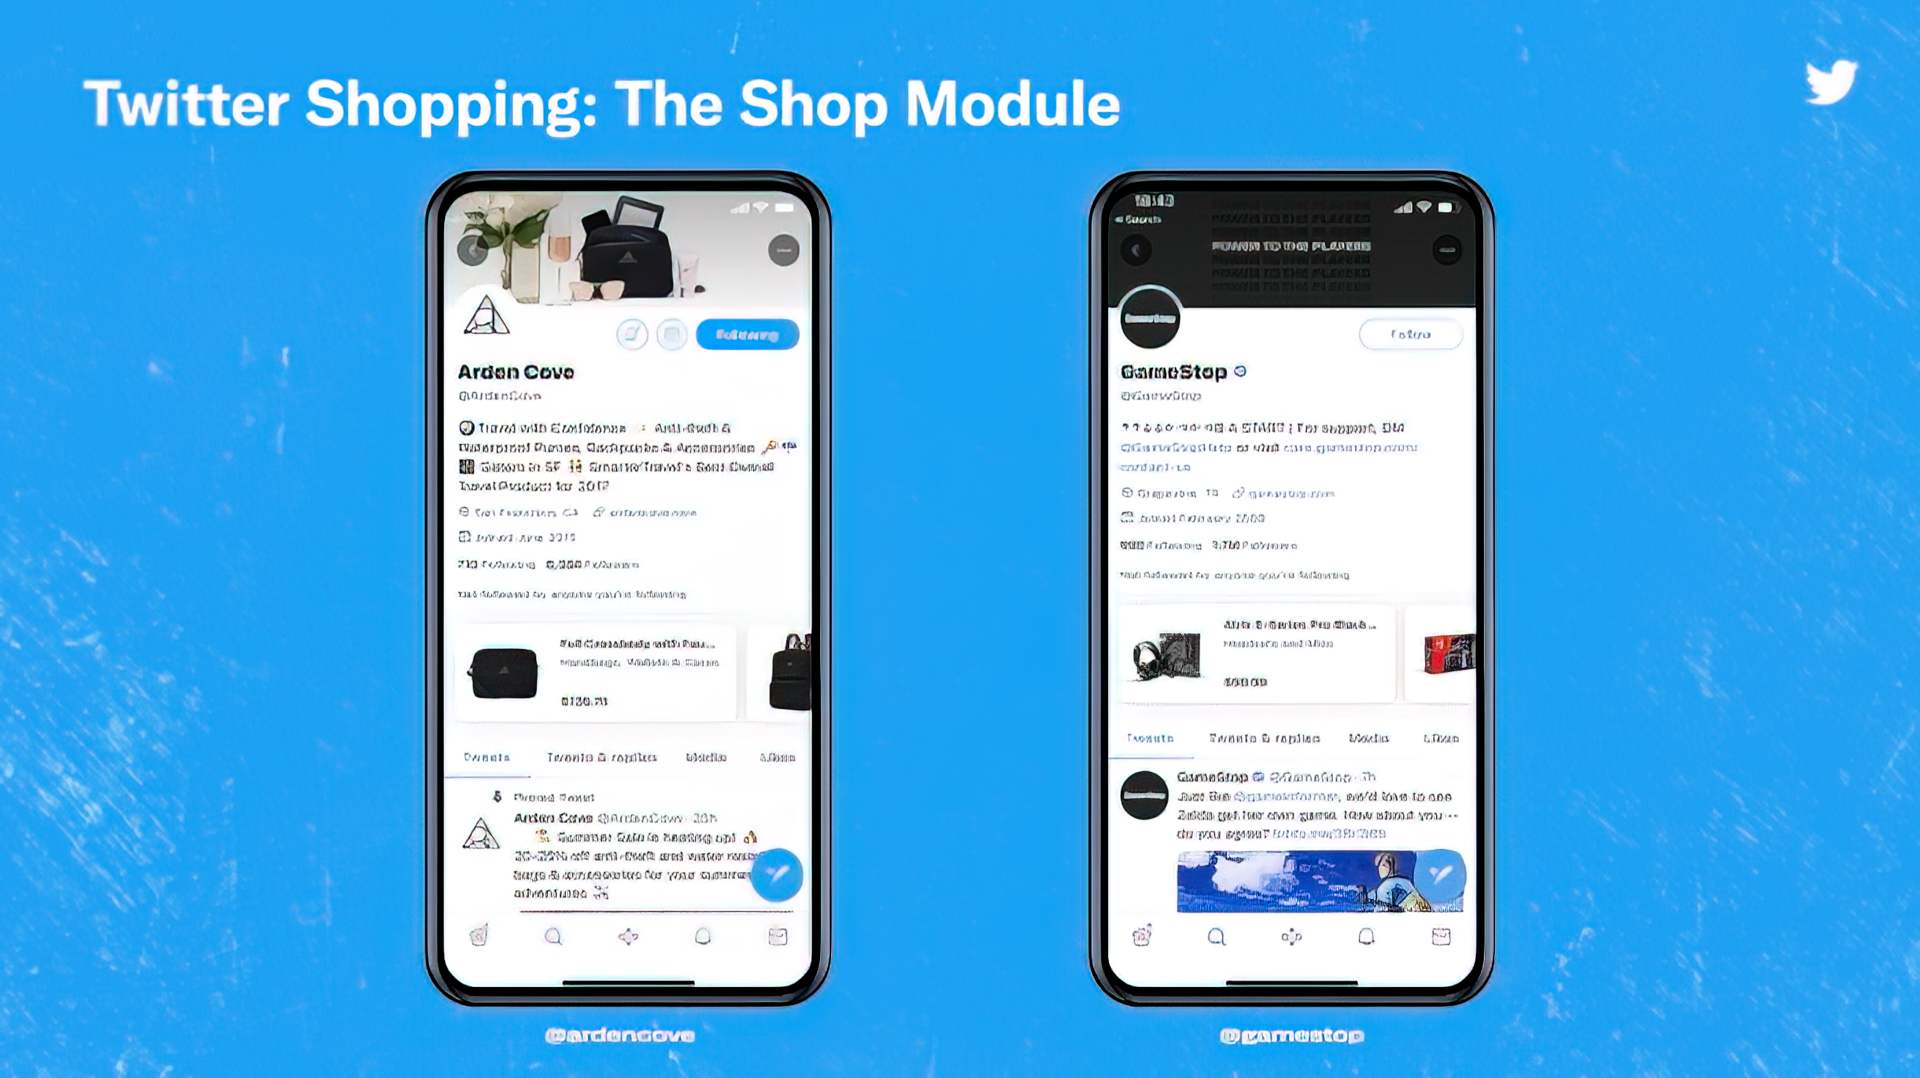 Интеграция Shopify с Twitter позволит продавцам Shopify перечислять свои товары в своих профилях Twitter Professional, причем каждый товар будет направлять покупателей.